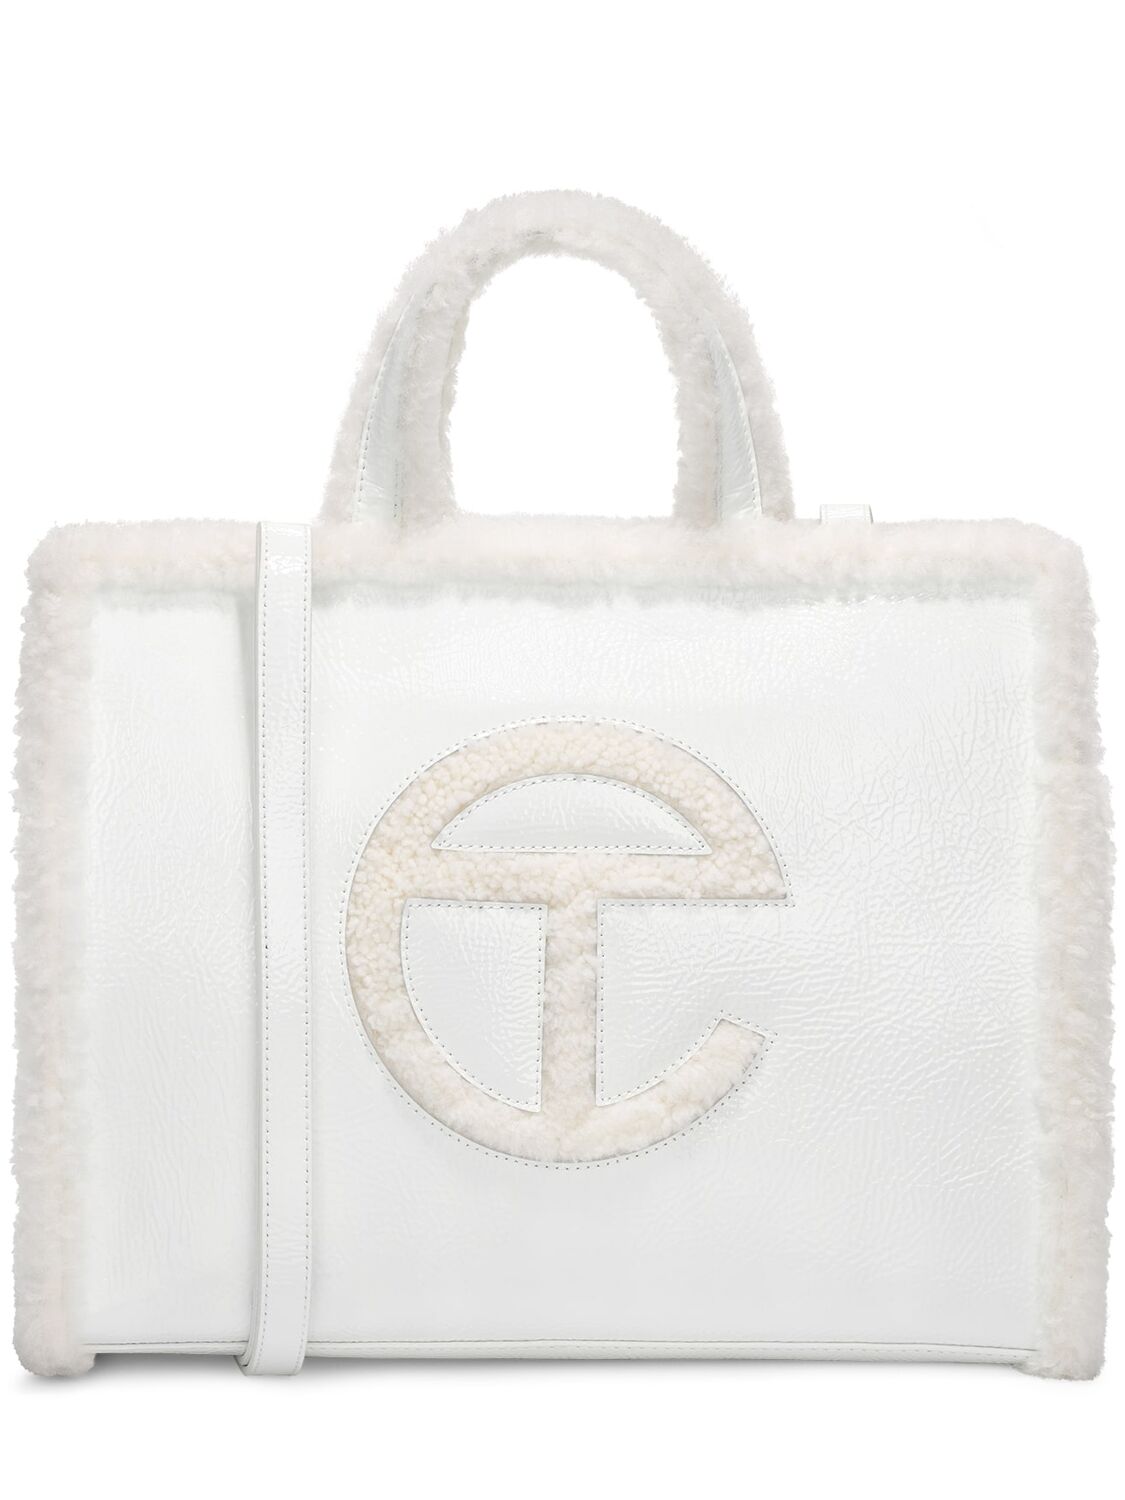 Image of Medium Telfar Crinkle Patent Shopper Bag